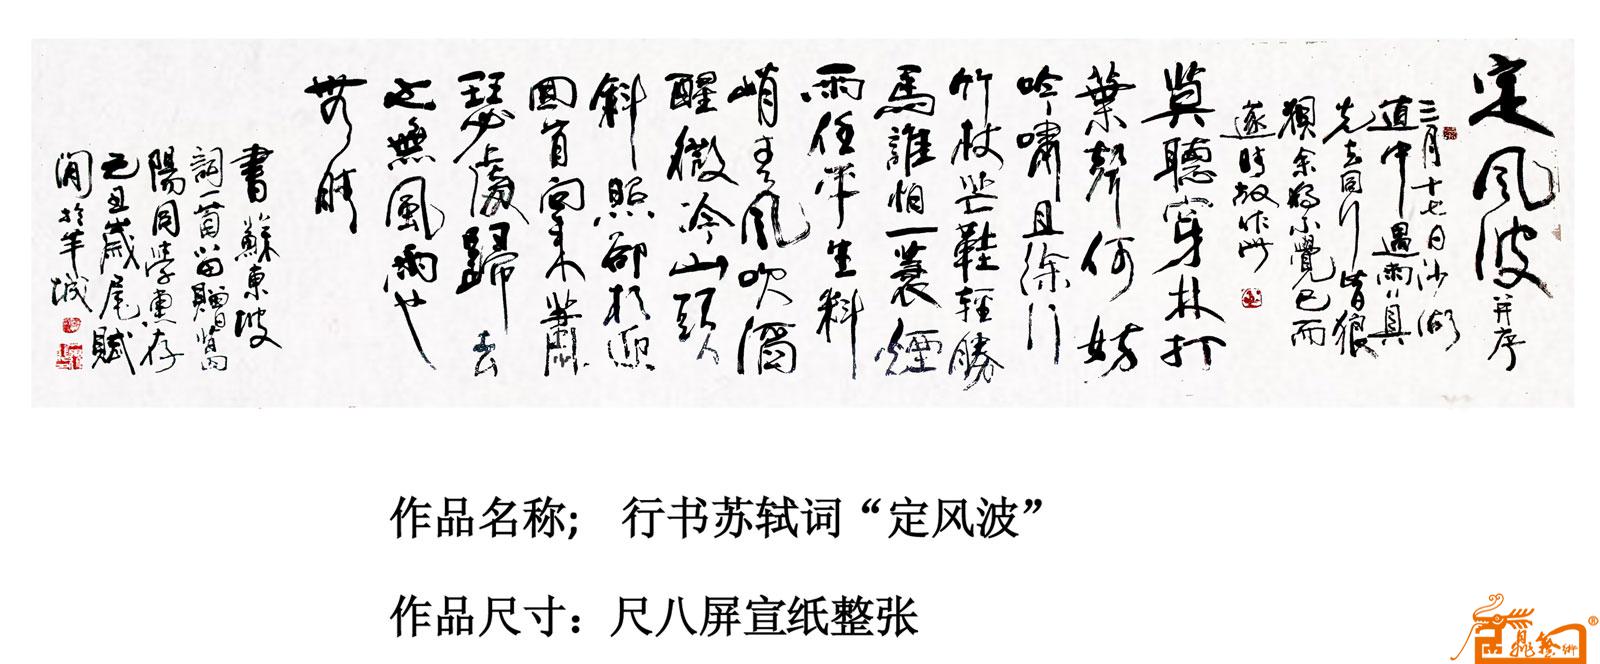 万延龙-定风波-淘宝-名人字画-中国书画交易中